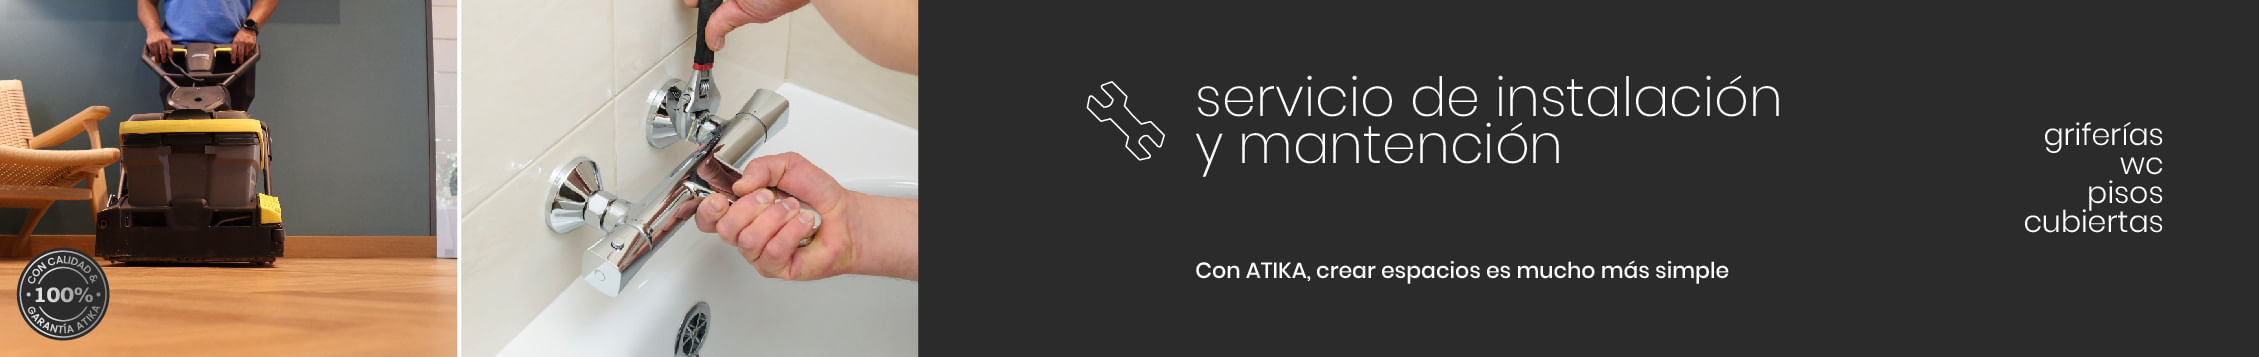 Servicio Instalación Atika 